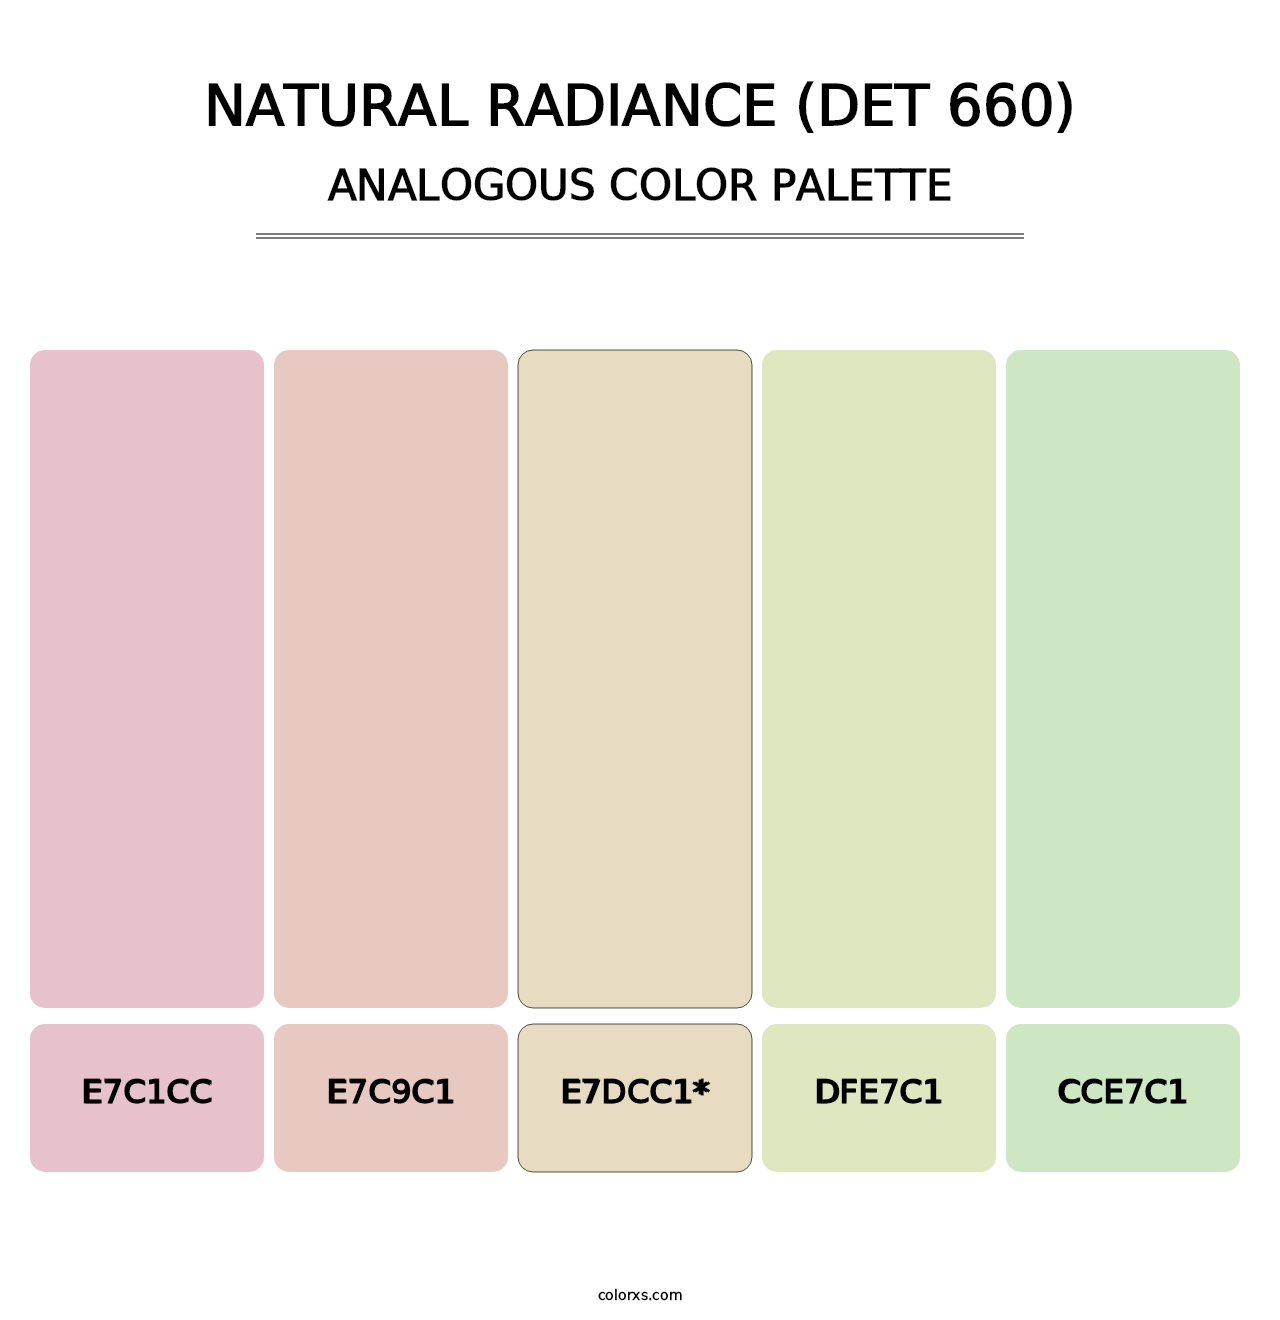 Natural Radiance (DET 660) - Analogous Color Palette